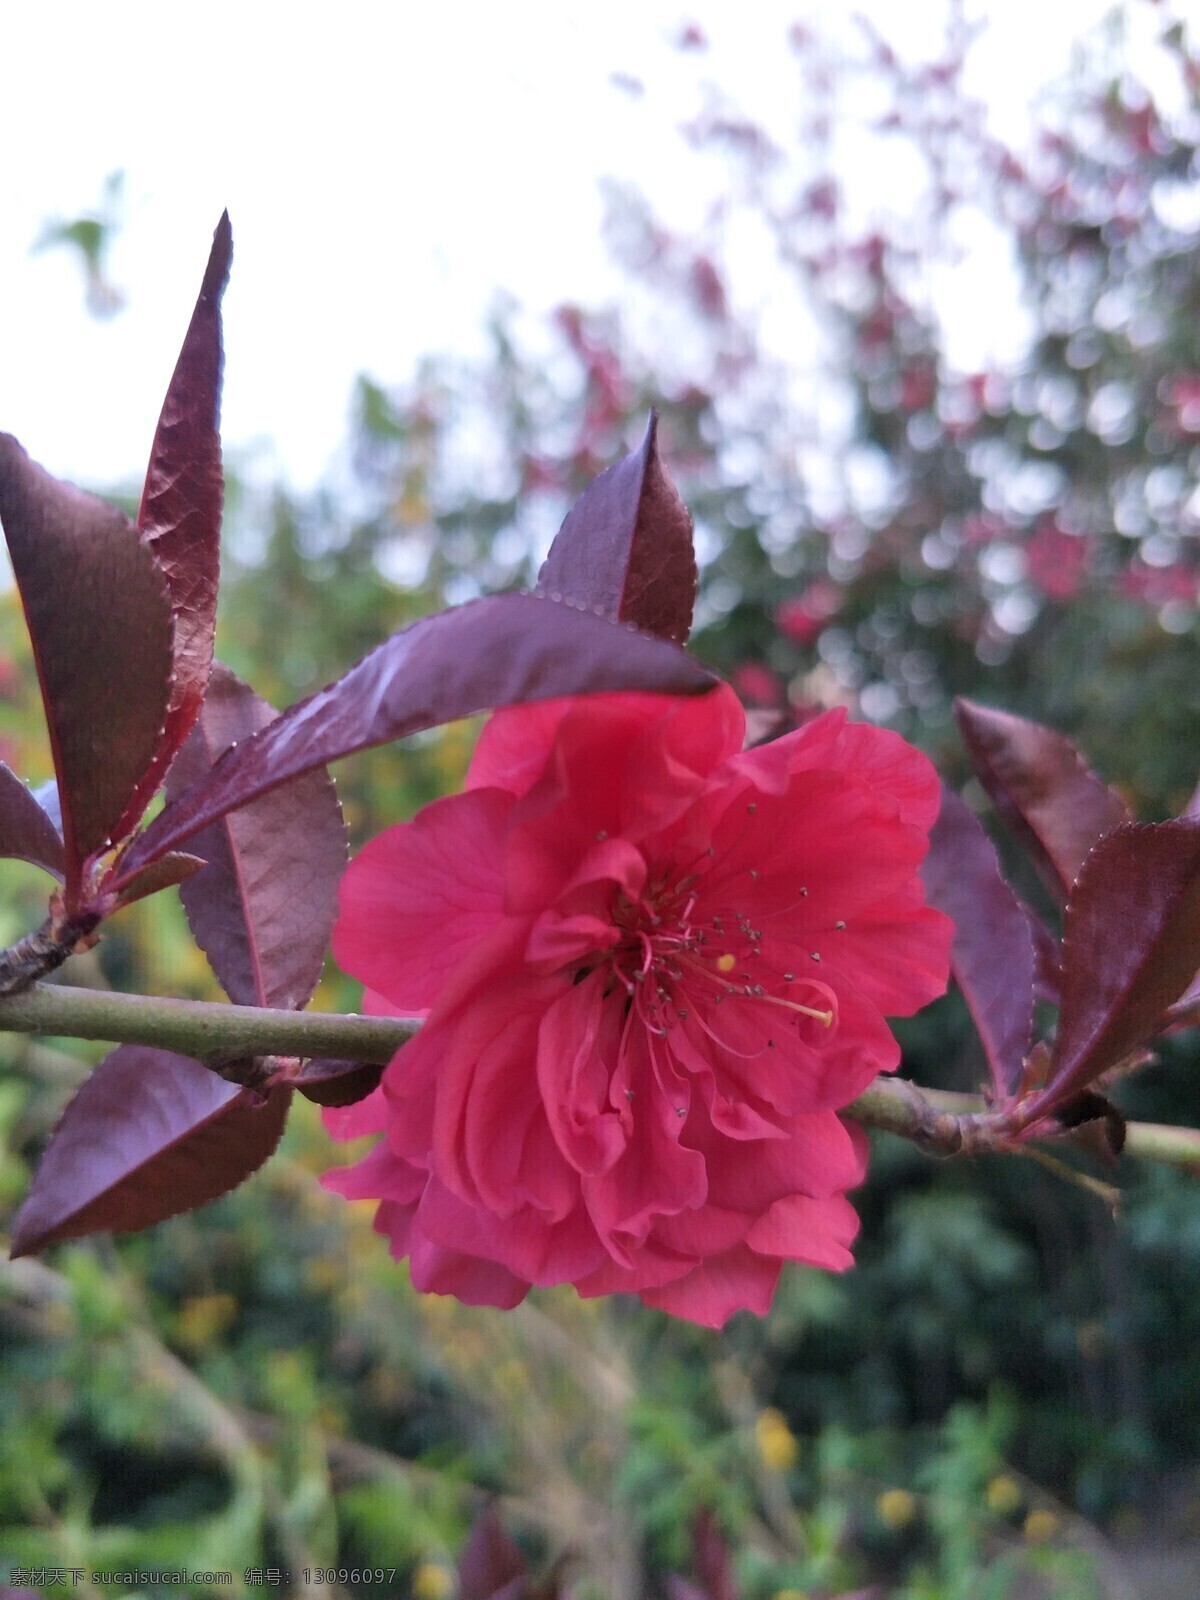 一朵红叶桃 植物 花卉 桃花 桃花特写 红花 园林植物 园林花卉 花草 生物世界 花卉世界 旅游摄影 自然风景